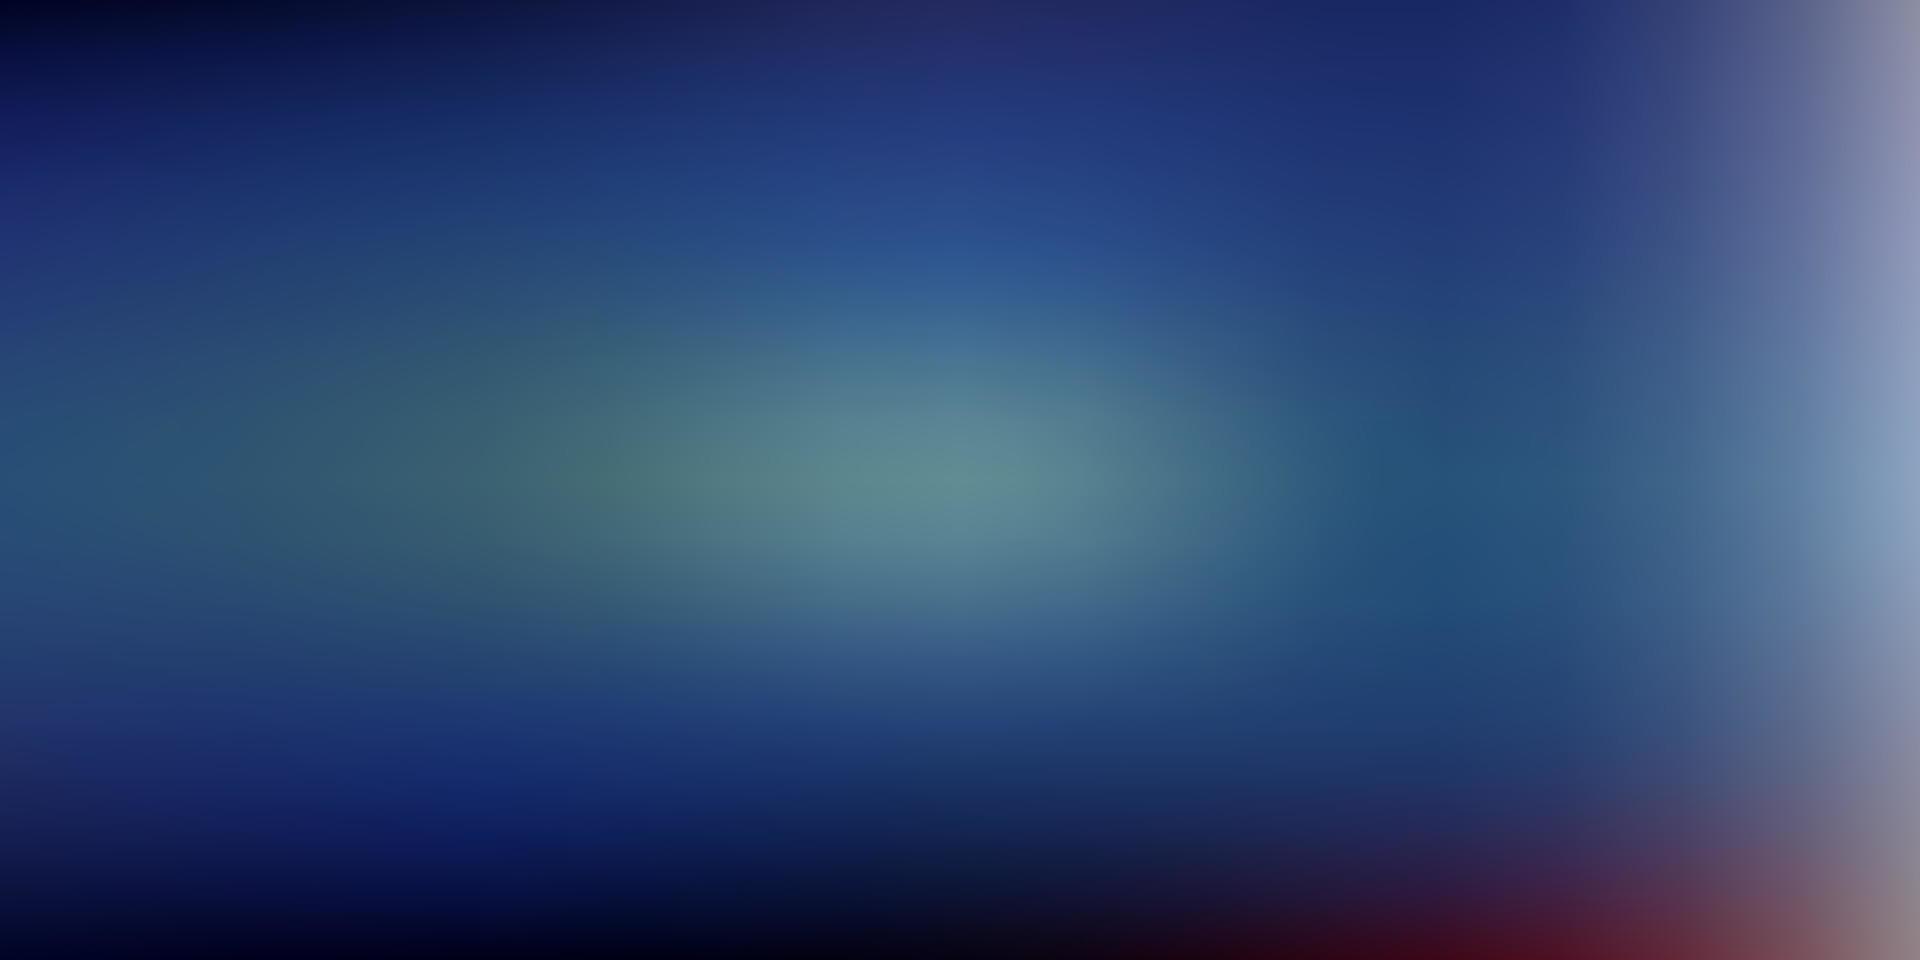 dessin de flou abstrait vecteur bleu clair, rouge.